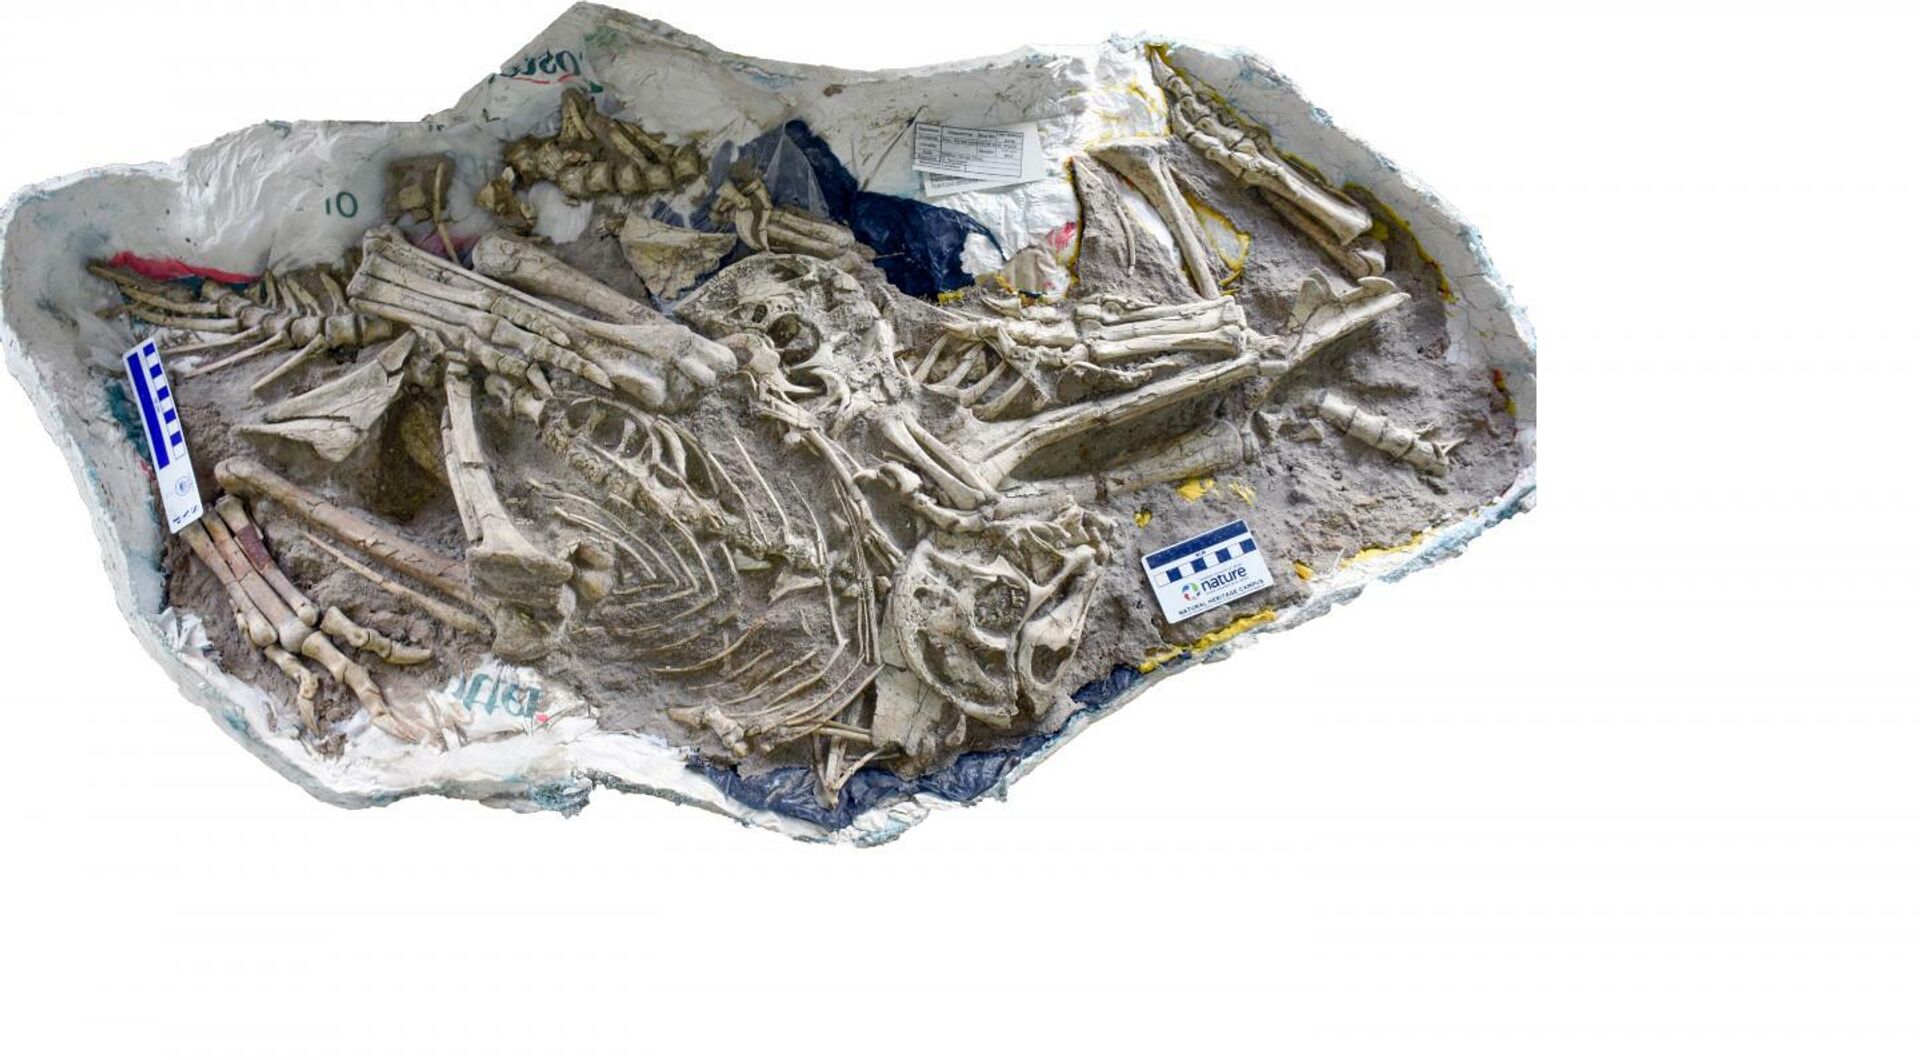  Три скелета динозавра Oksoko avarsan, найденные совместно - РИА Новости, 1920, 07.10.2020